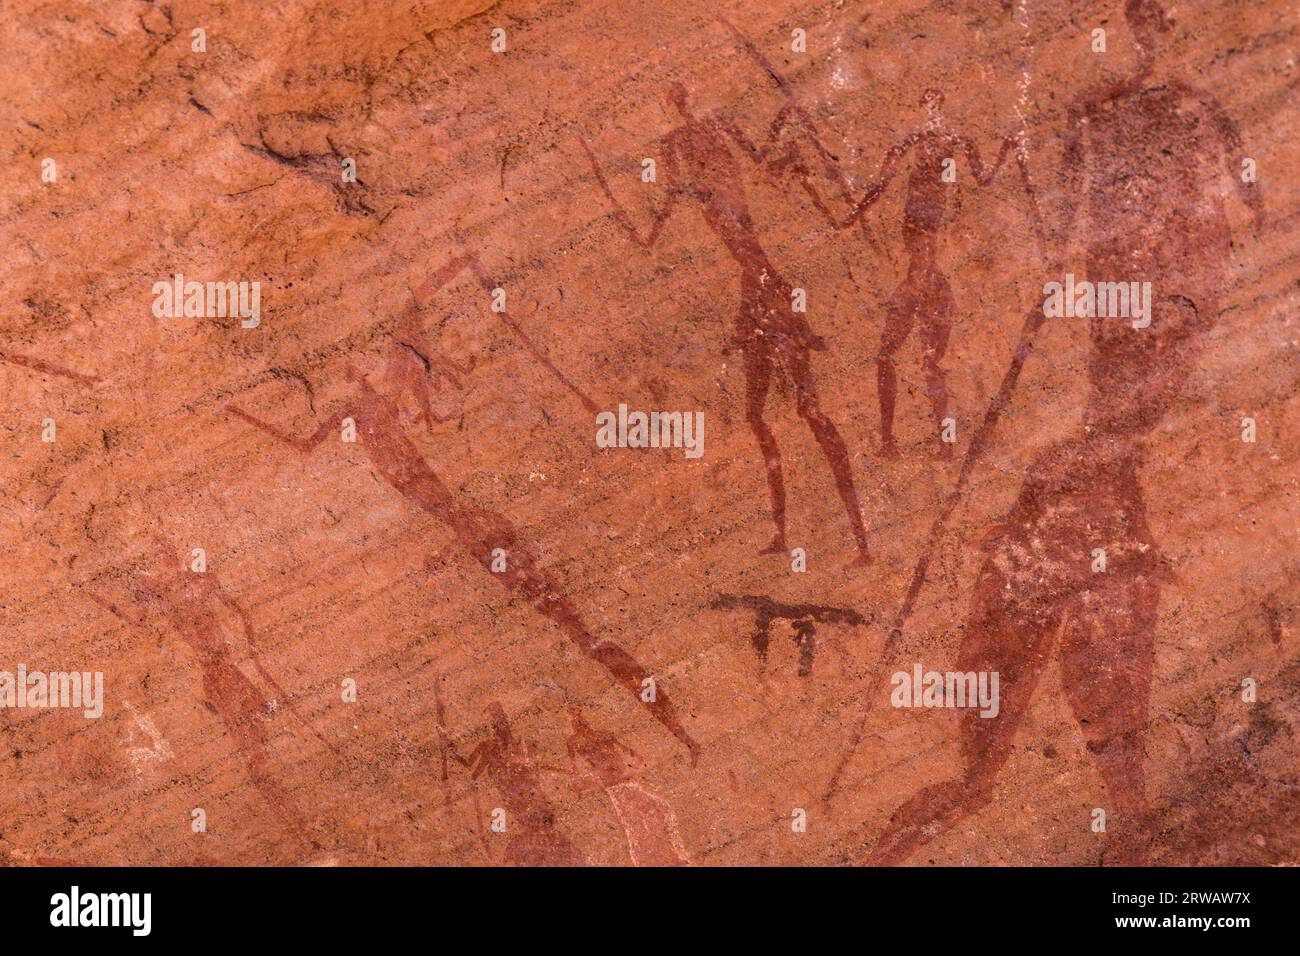 rock art in the sahara desert Stock Photo